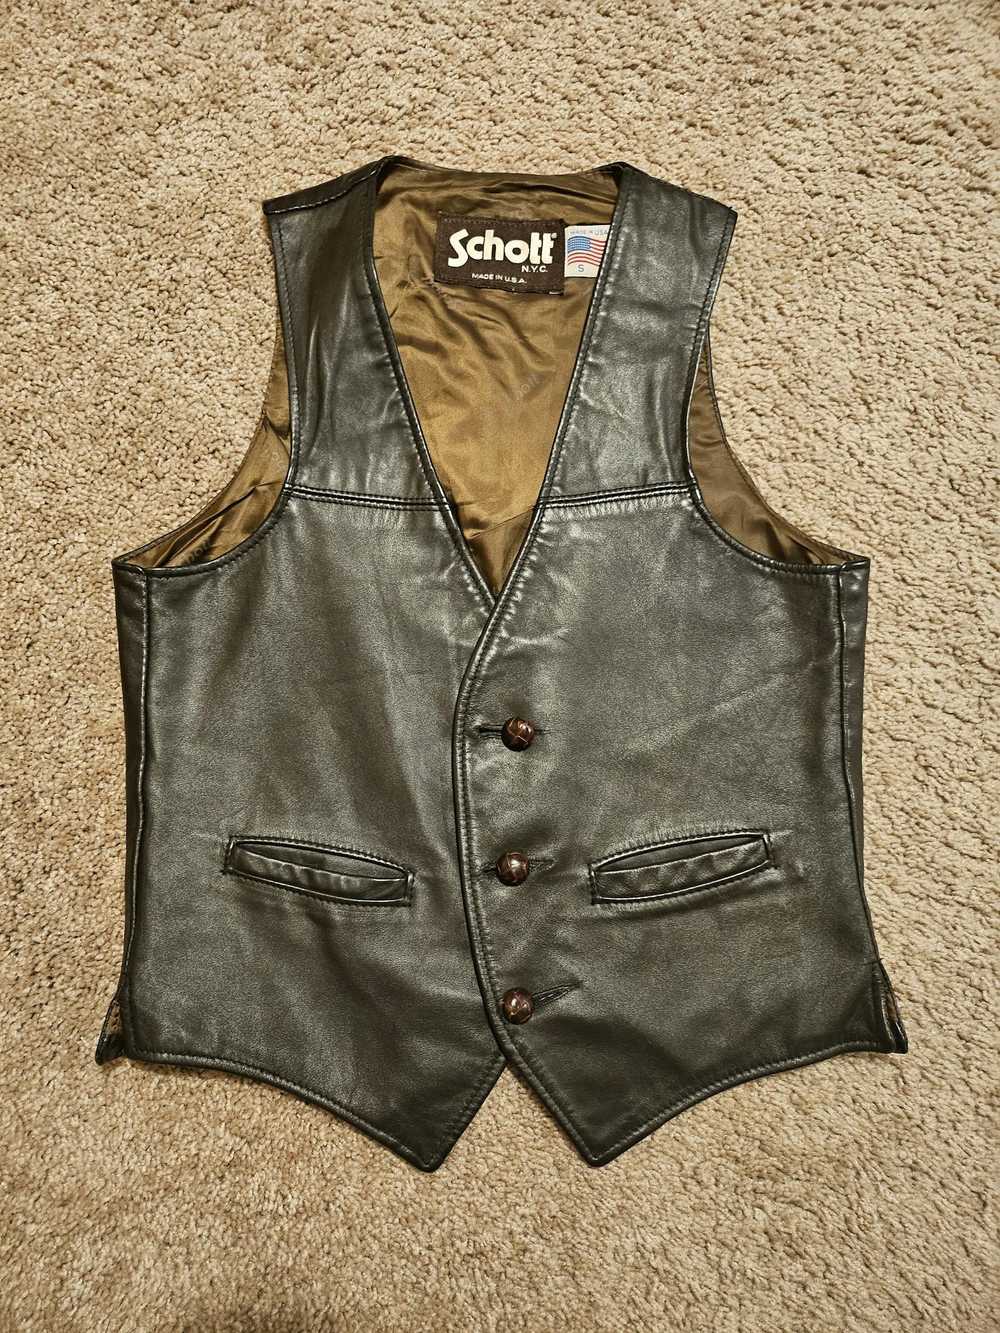 Schott Schott Leather Vest/Waistcoat - image 1